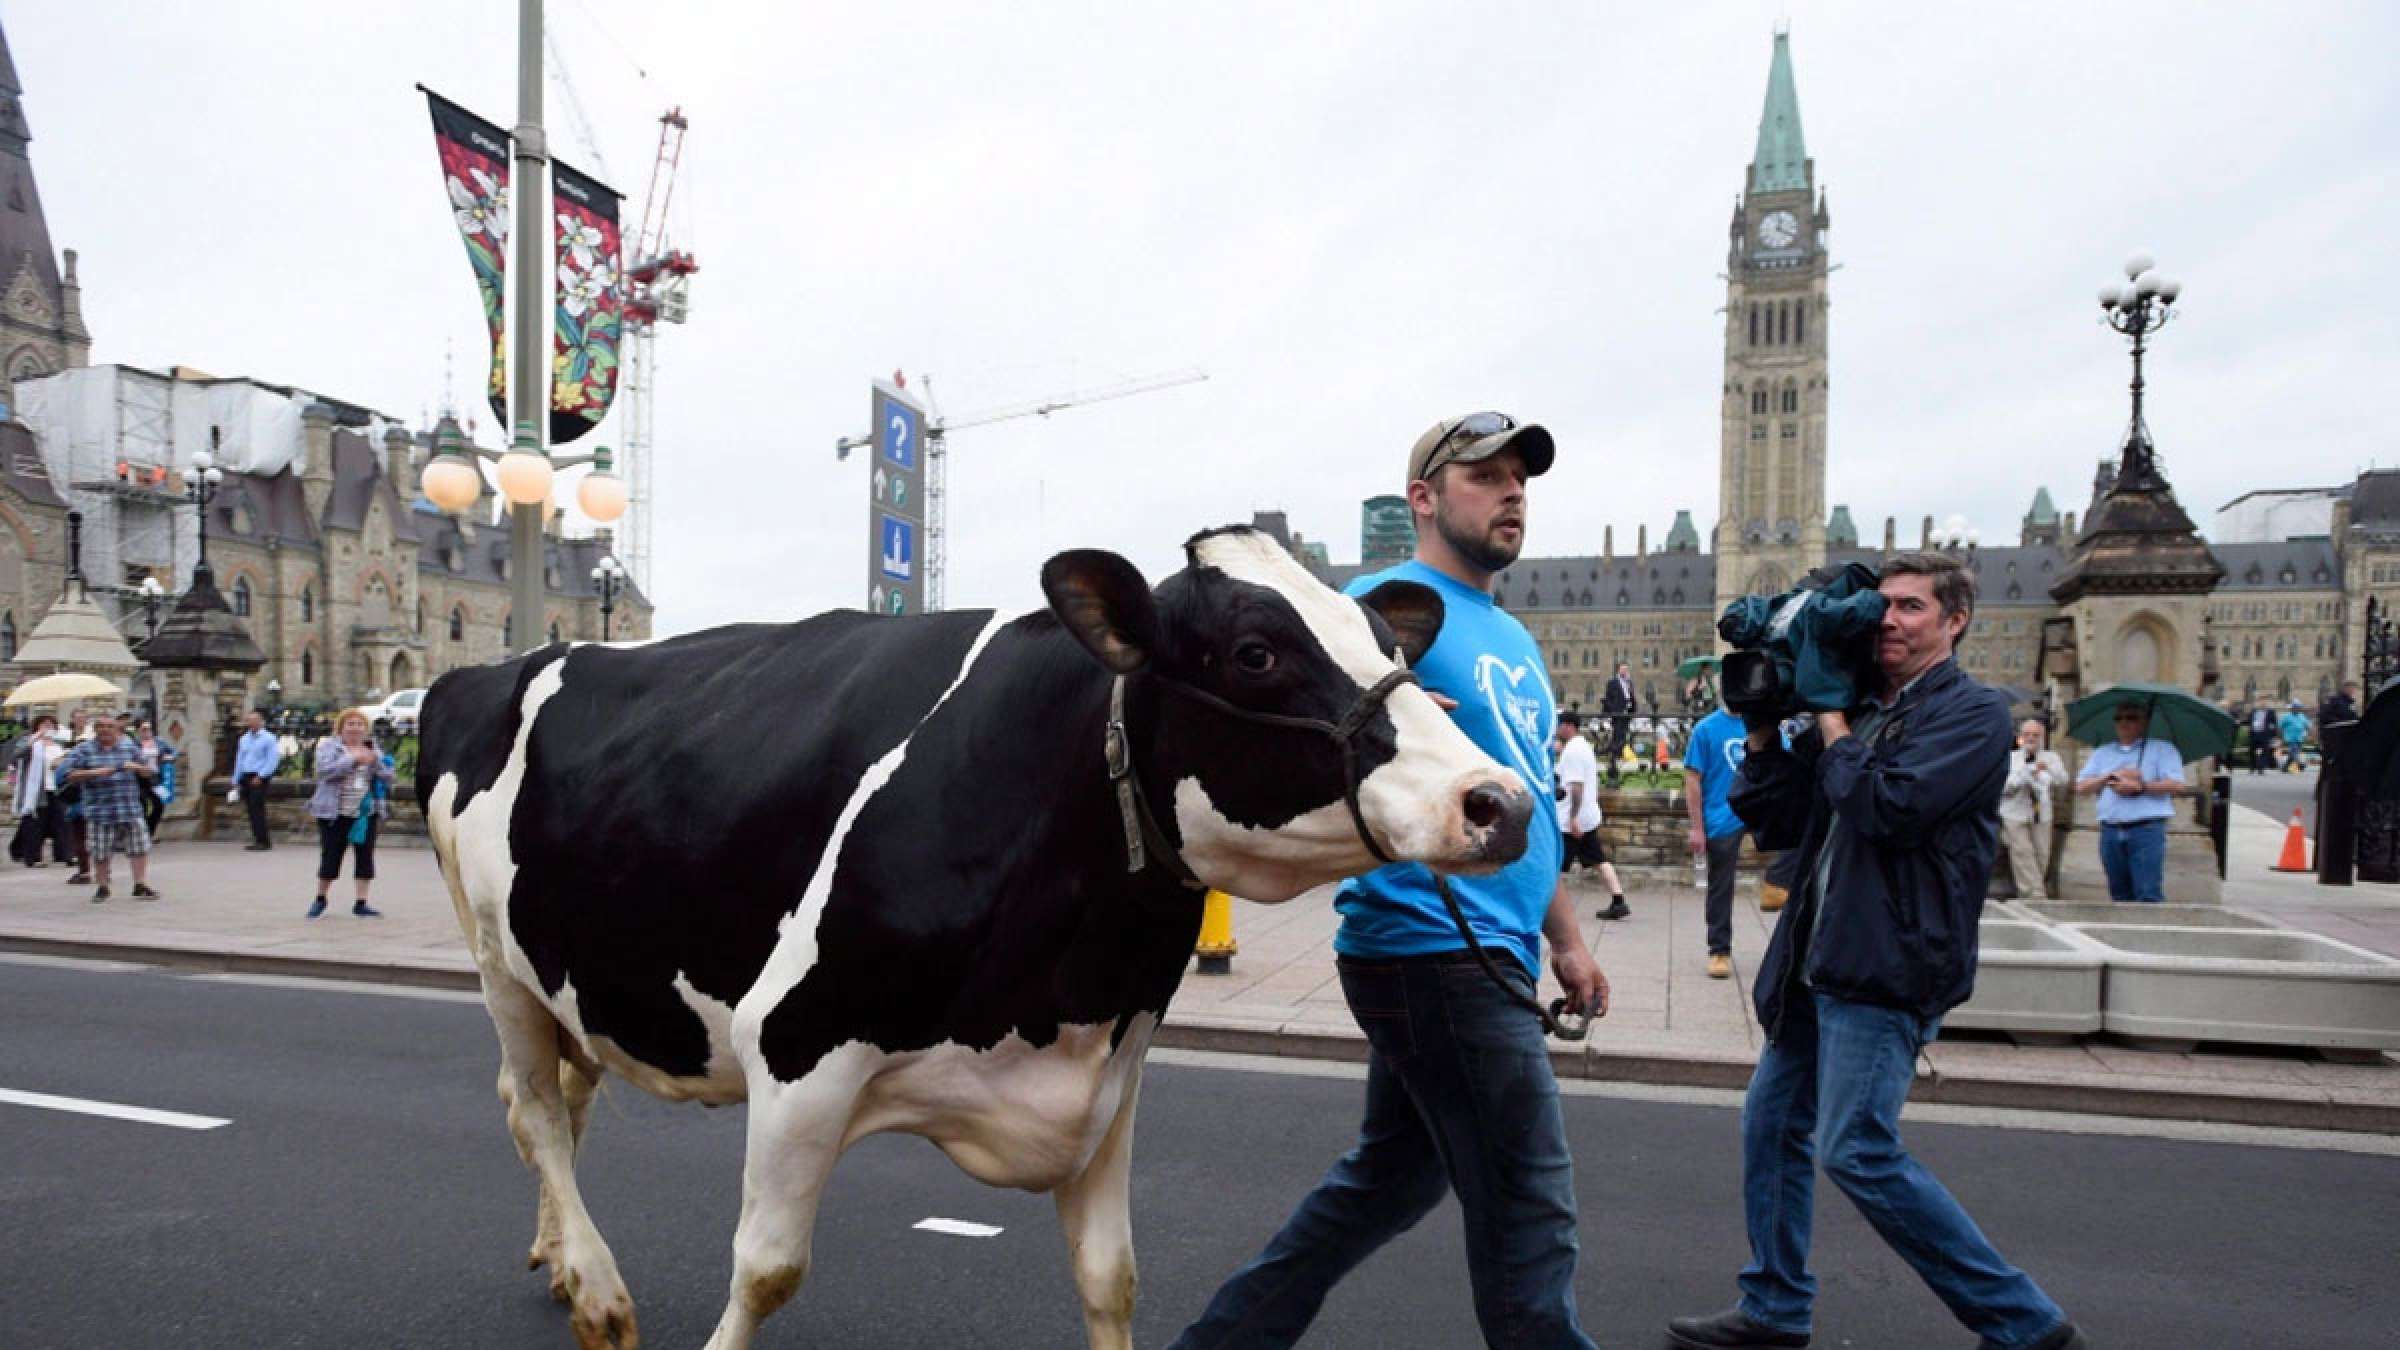 خبر-کانادا-آمریکا-کانادا-حکم-دادگاه-دعوا-محصولات-لبنی-شیر-پنیر-ماست-ادعای-پیروزی-کردند